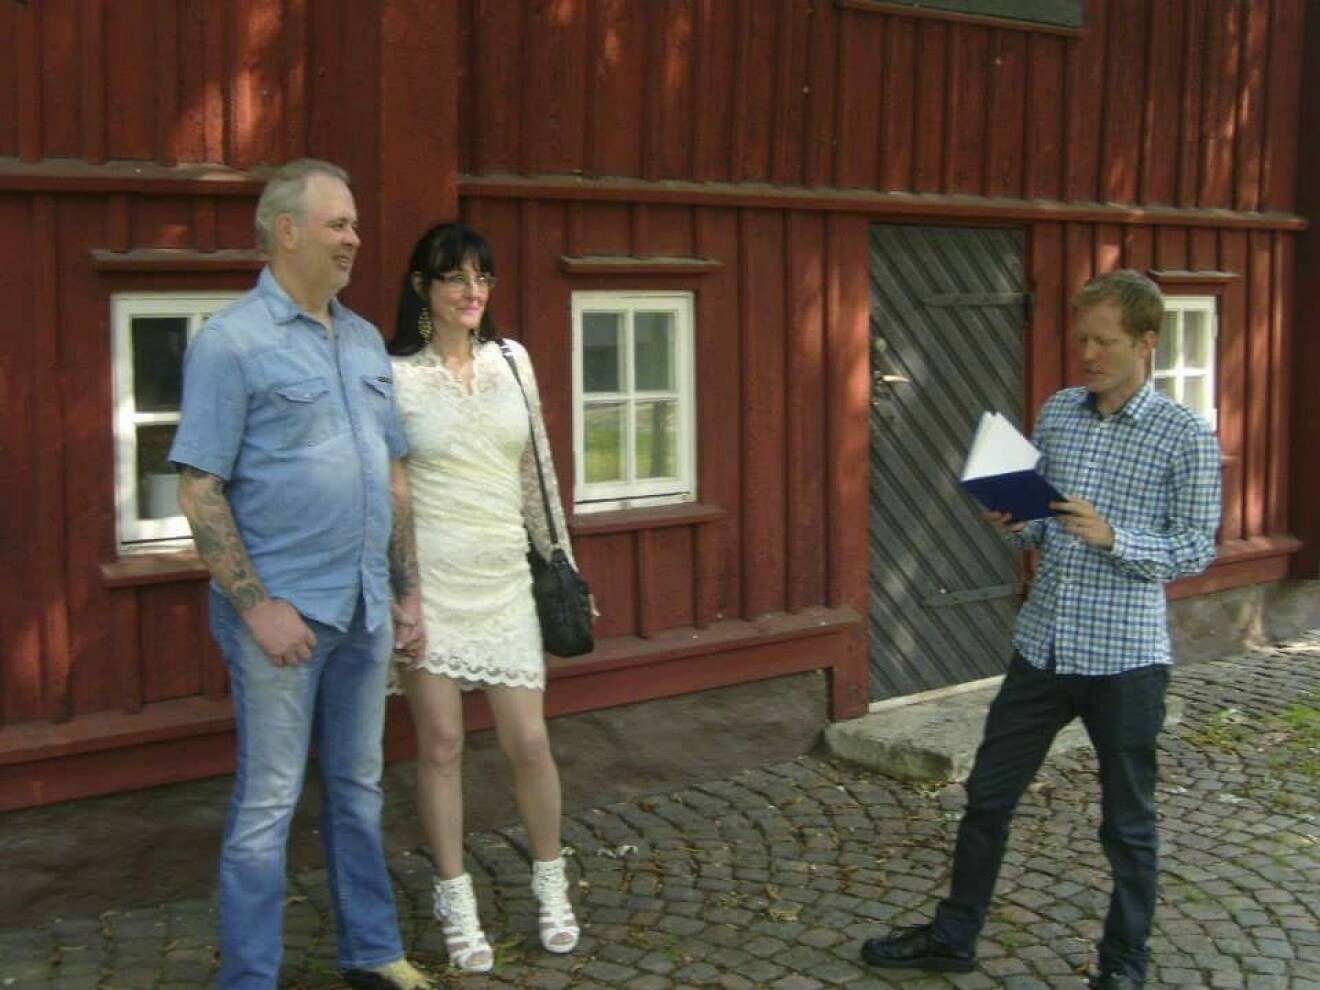 Kent i jeansskjorta och jeans, Eva i kort vit klänning med spetsar, gifter sig på en innergård i Karlstad sommaren 2013. De står framför ett rött gammalt trähus, och mittemot dem står den borgerliga vigselförrättaren och läser ur en bok.